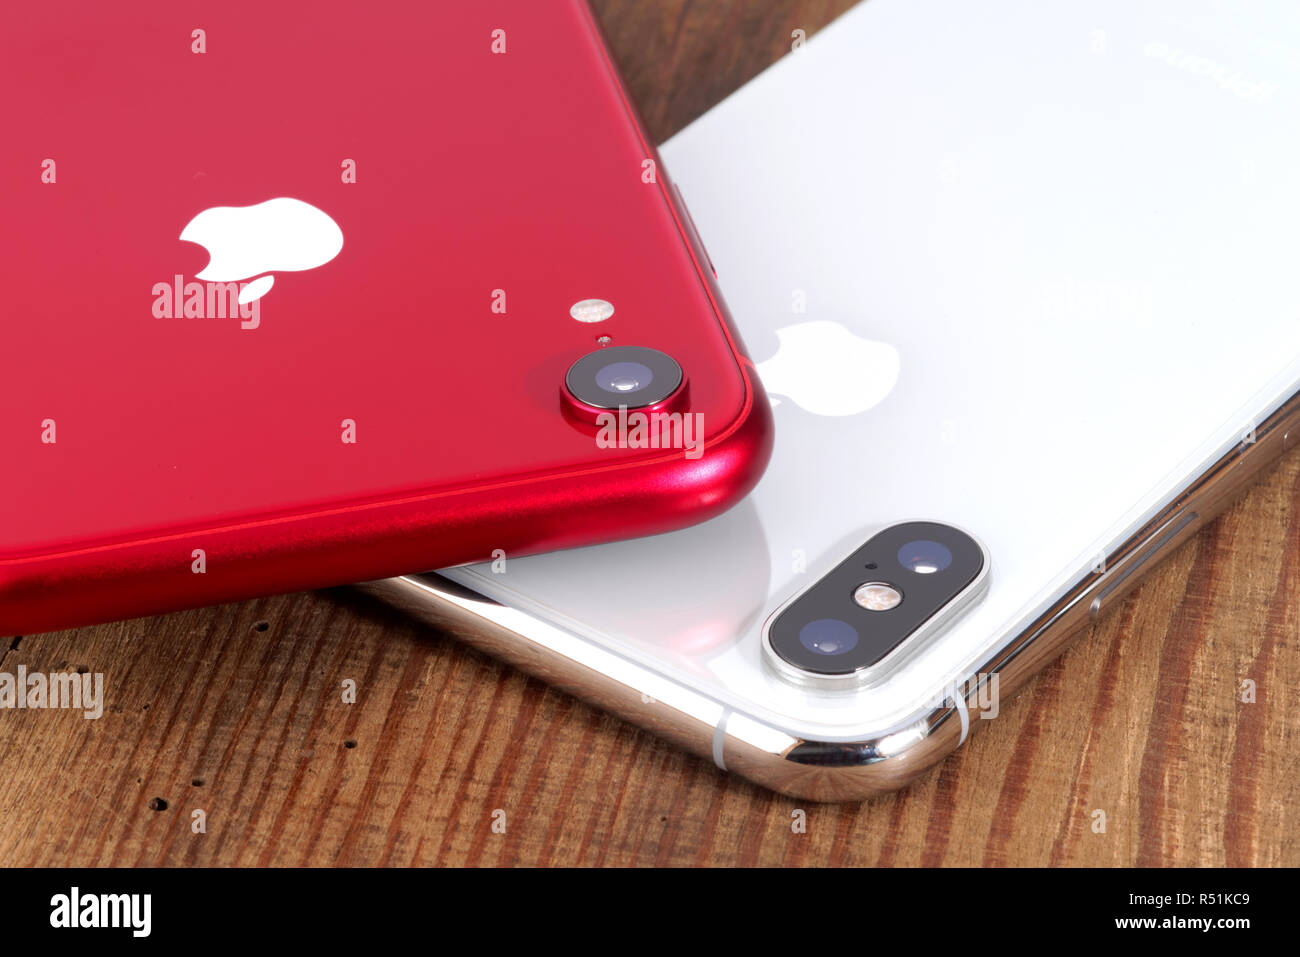 Koszalin, Polonia - 29 Novembre 2018: Argento iPhone Xs e rosso iPhone XR. La Xs iPhone e iPhone XR è smart phone con multi touch screen prodotto Foto Stock